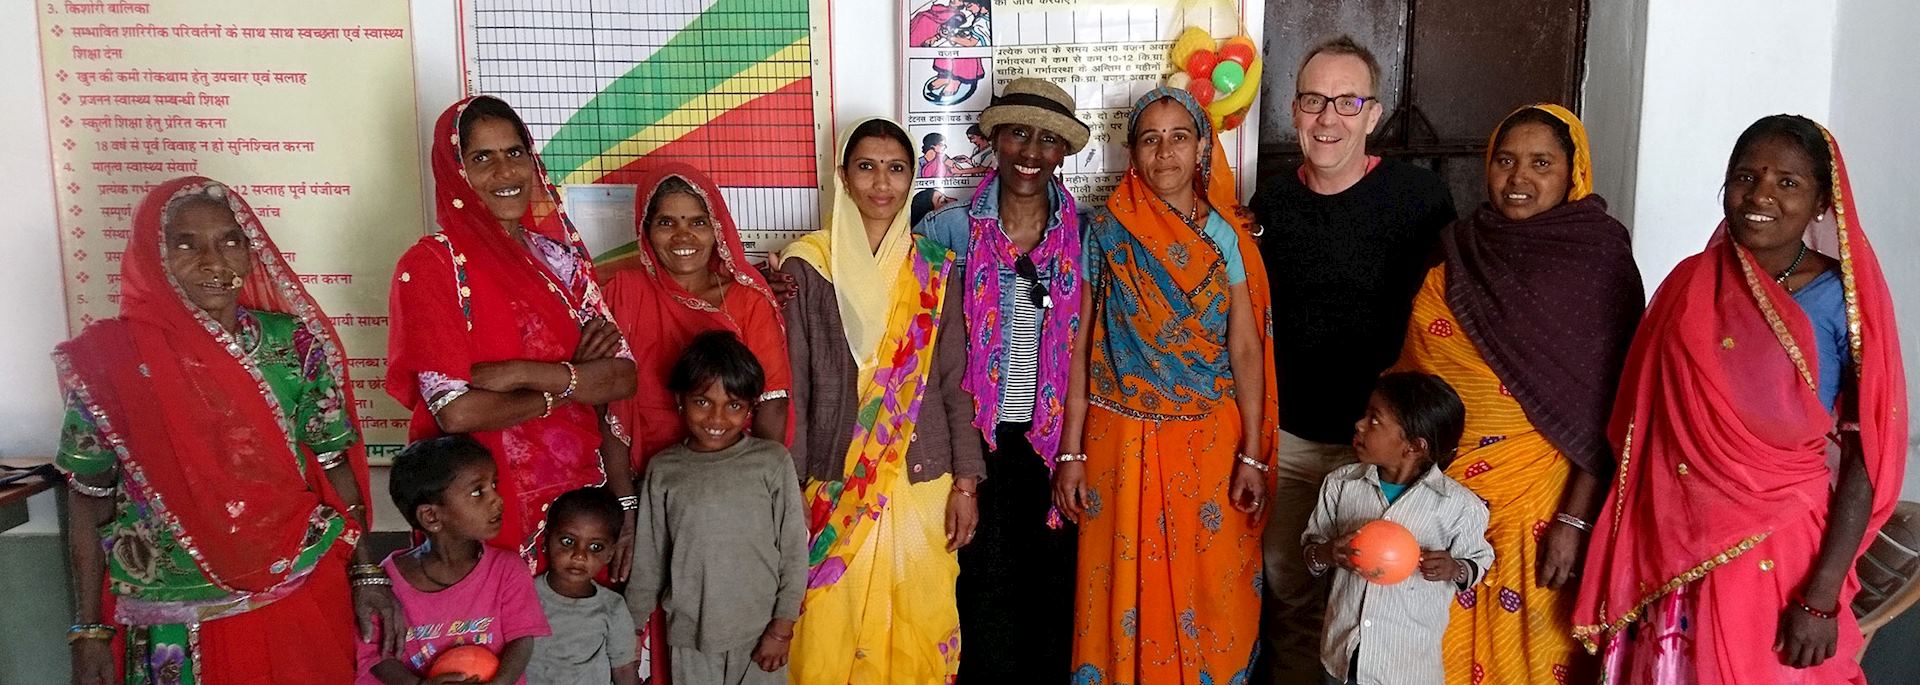 Ladies at the health centre in Araveli, India